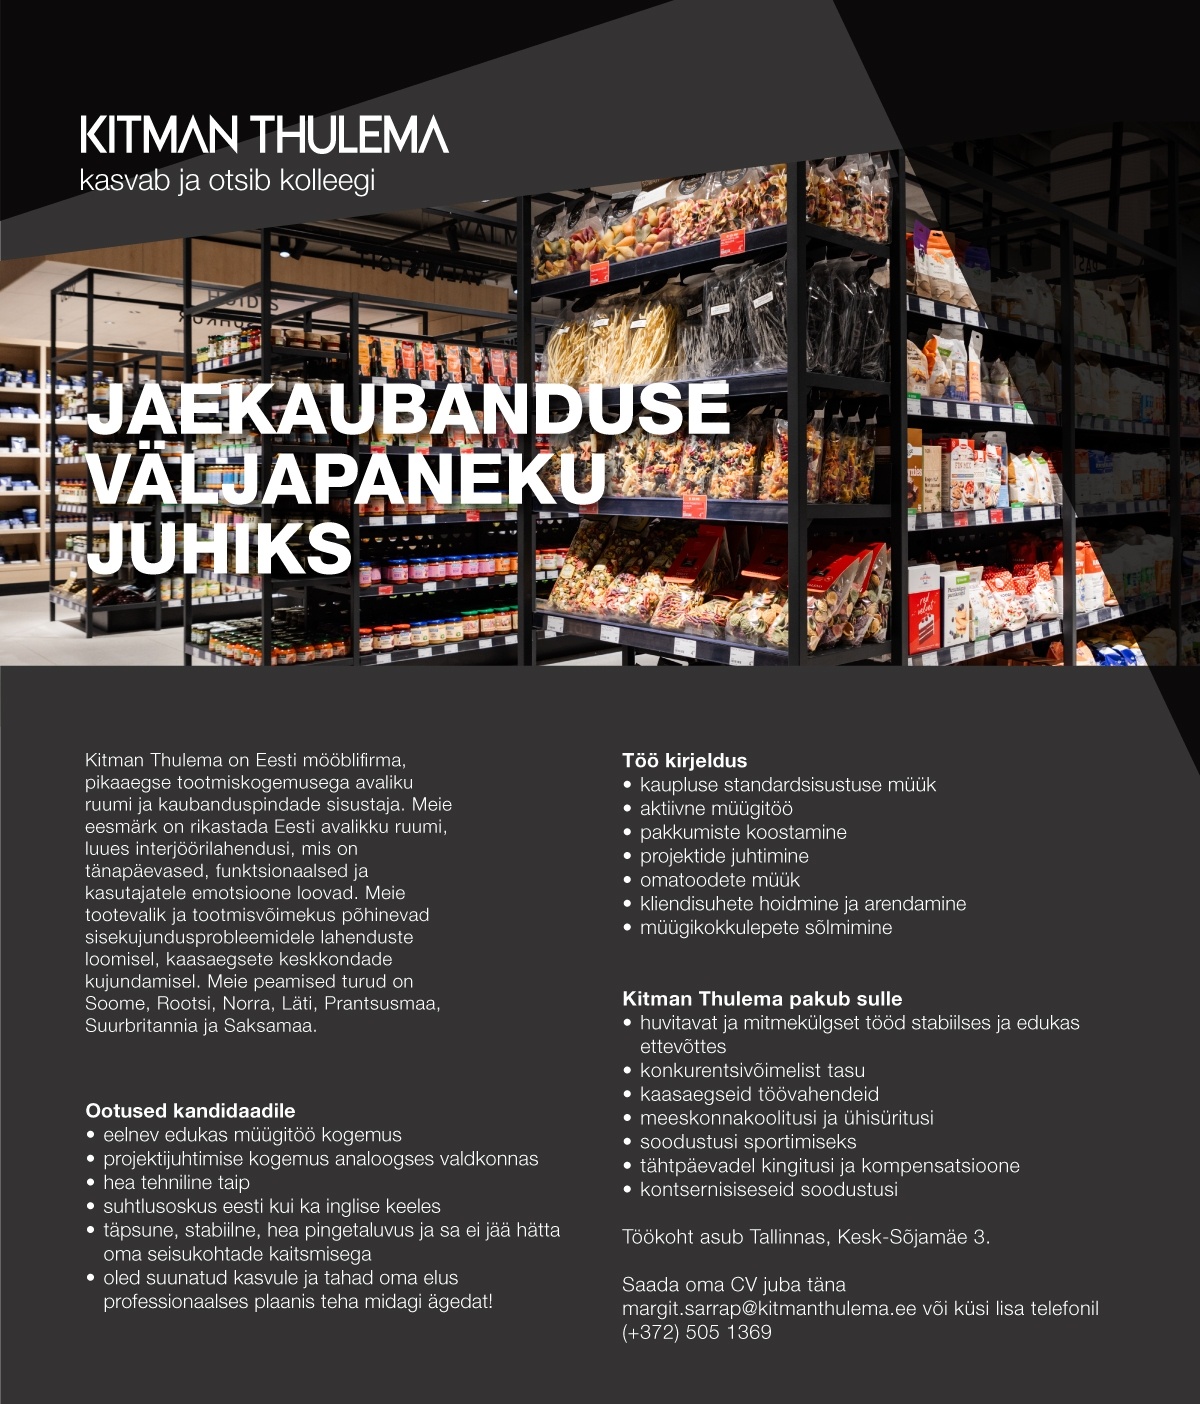 Kitman Thulema AS Jaekaubanduse väljapaneku juht